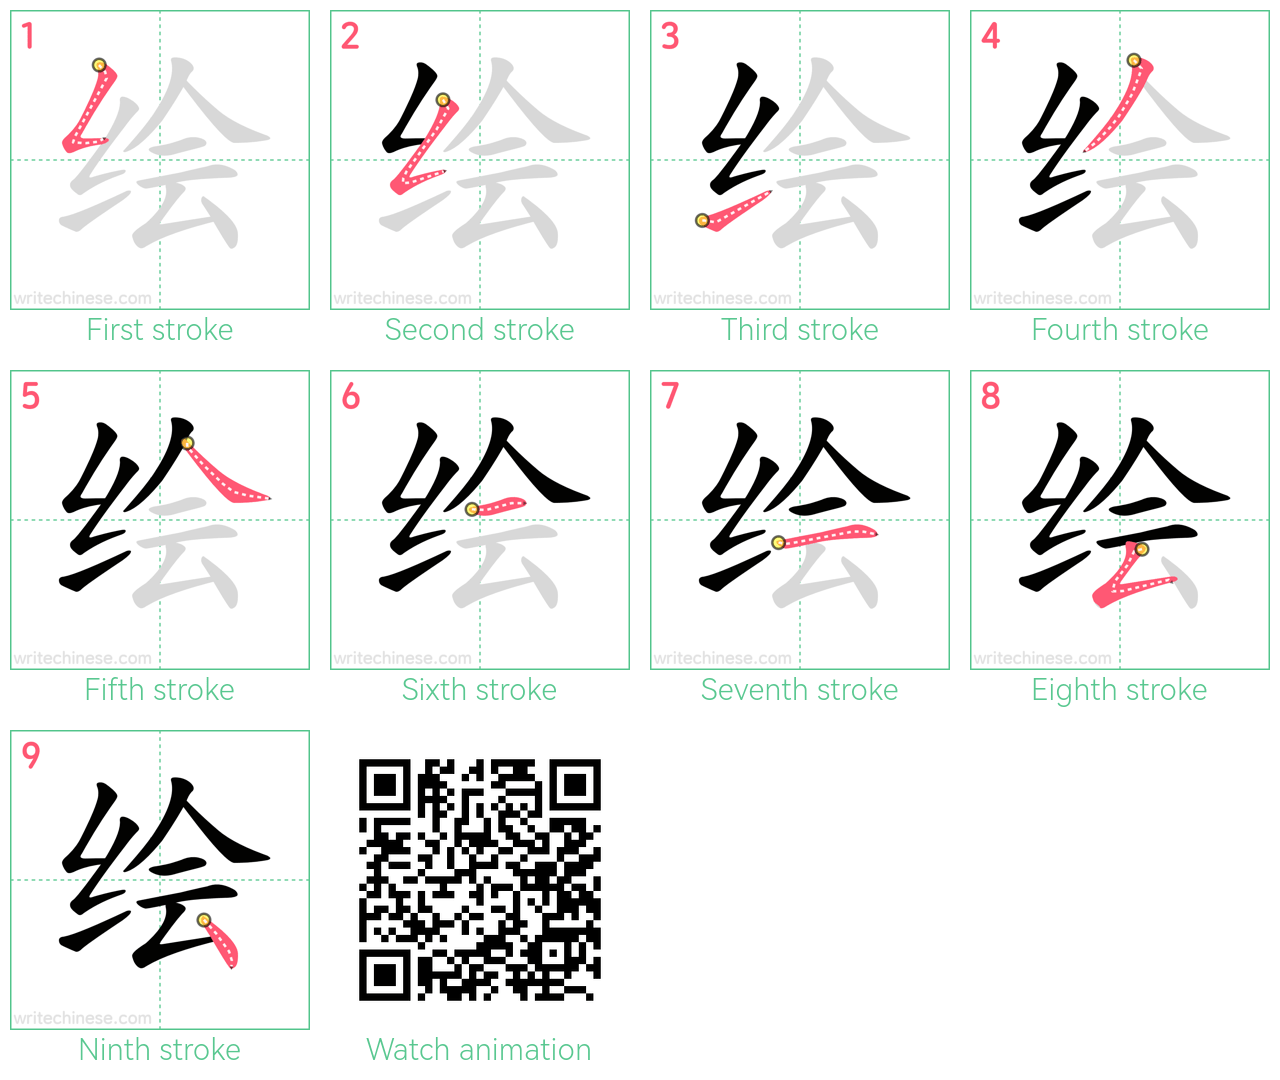 绘 step-by-step stroke order diagrams